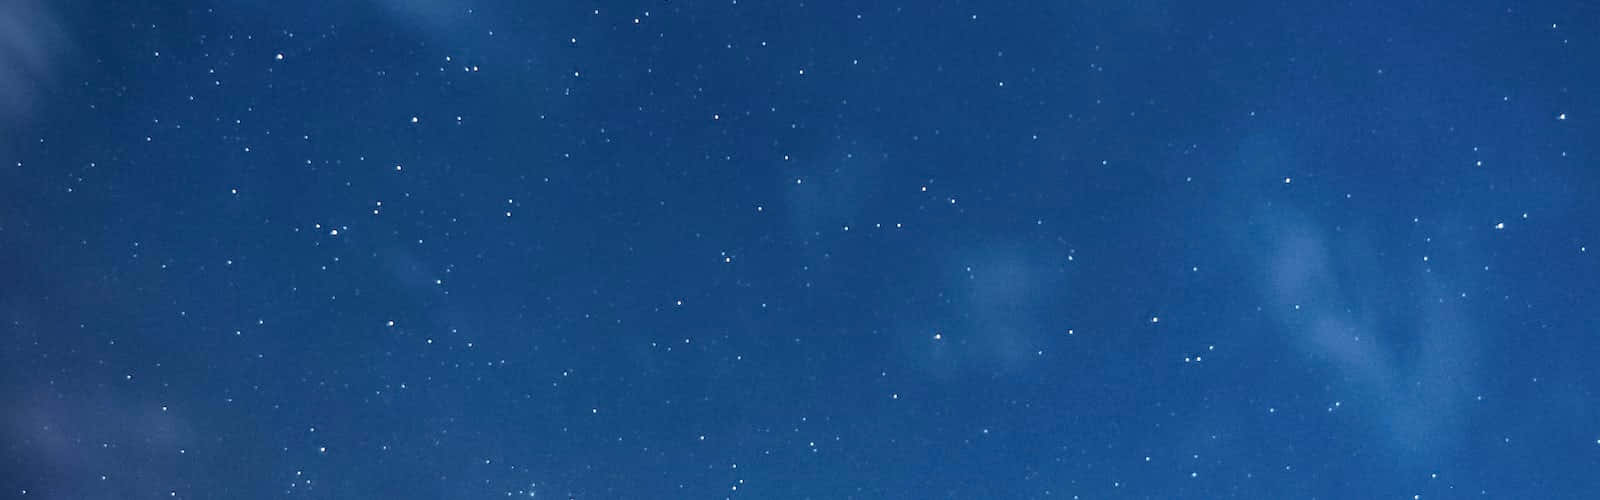 Imagende Estrellas En Nubes De Polvo Cósmico.